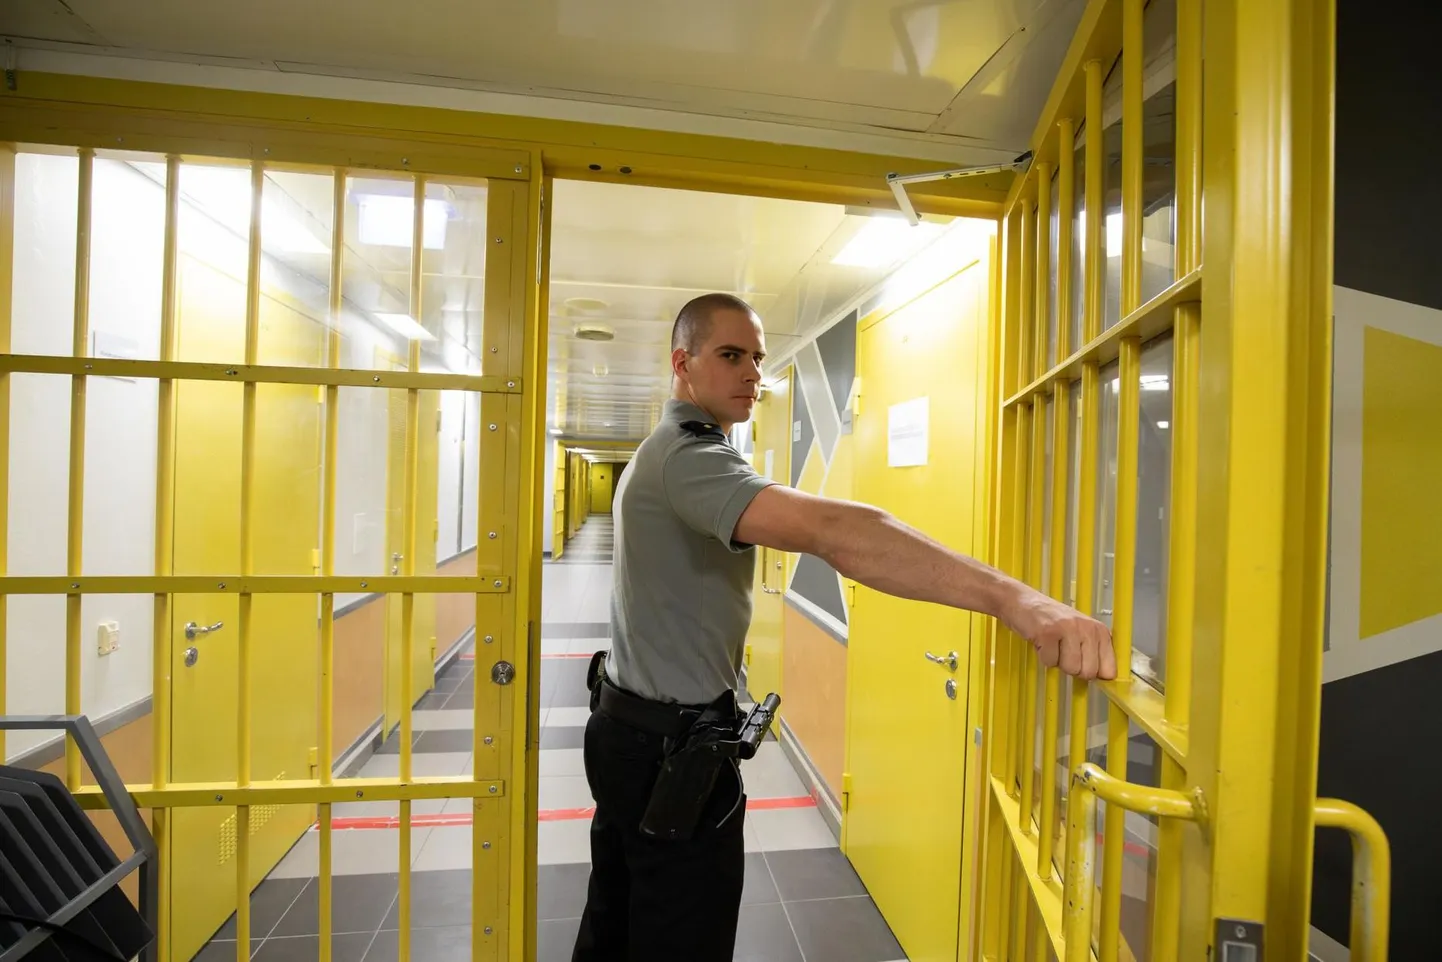 Viru vangla saateüksuse vanemvalvur Risto Männi on mõne aastaga teinud karjääriredelil muljetavaldava tõusu. Nüüd on tema ülesanneteks teiste valvurite treenimine ja vangide saatmine, näiteks haiglavisiitide ajal.